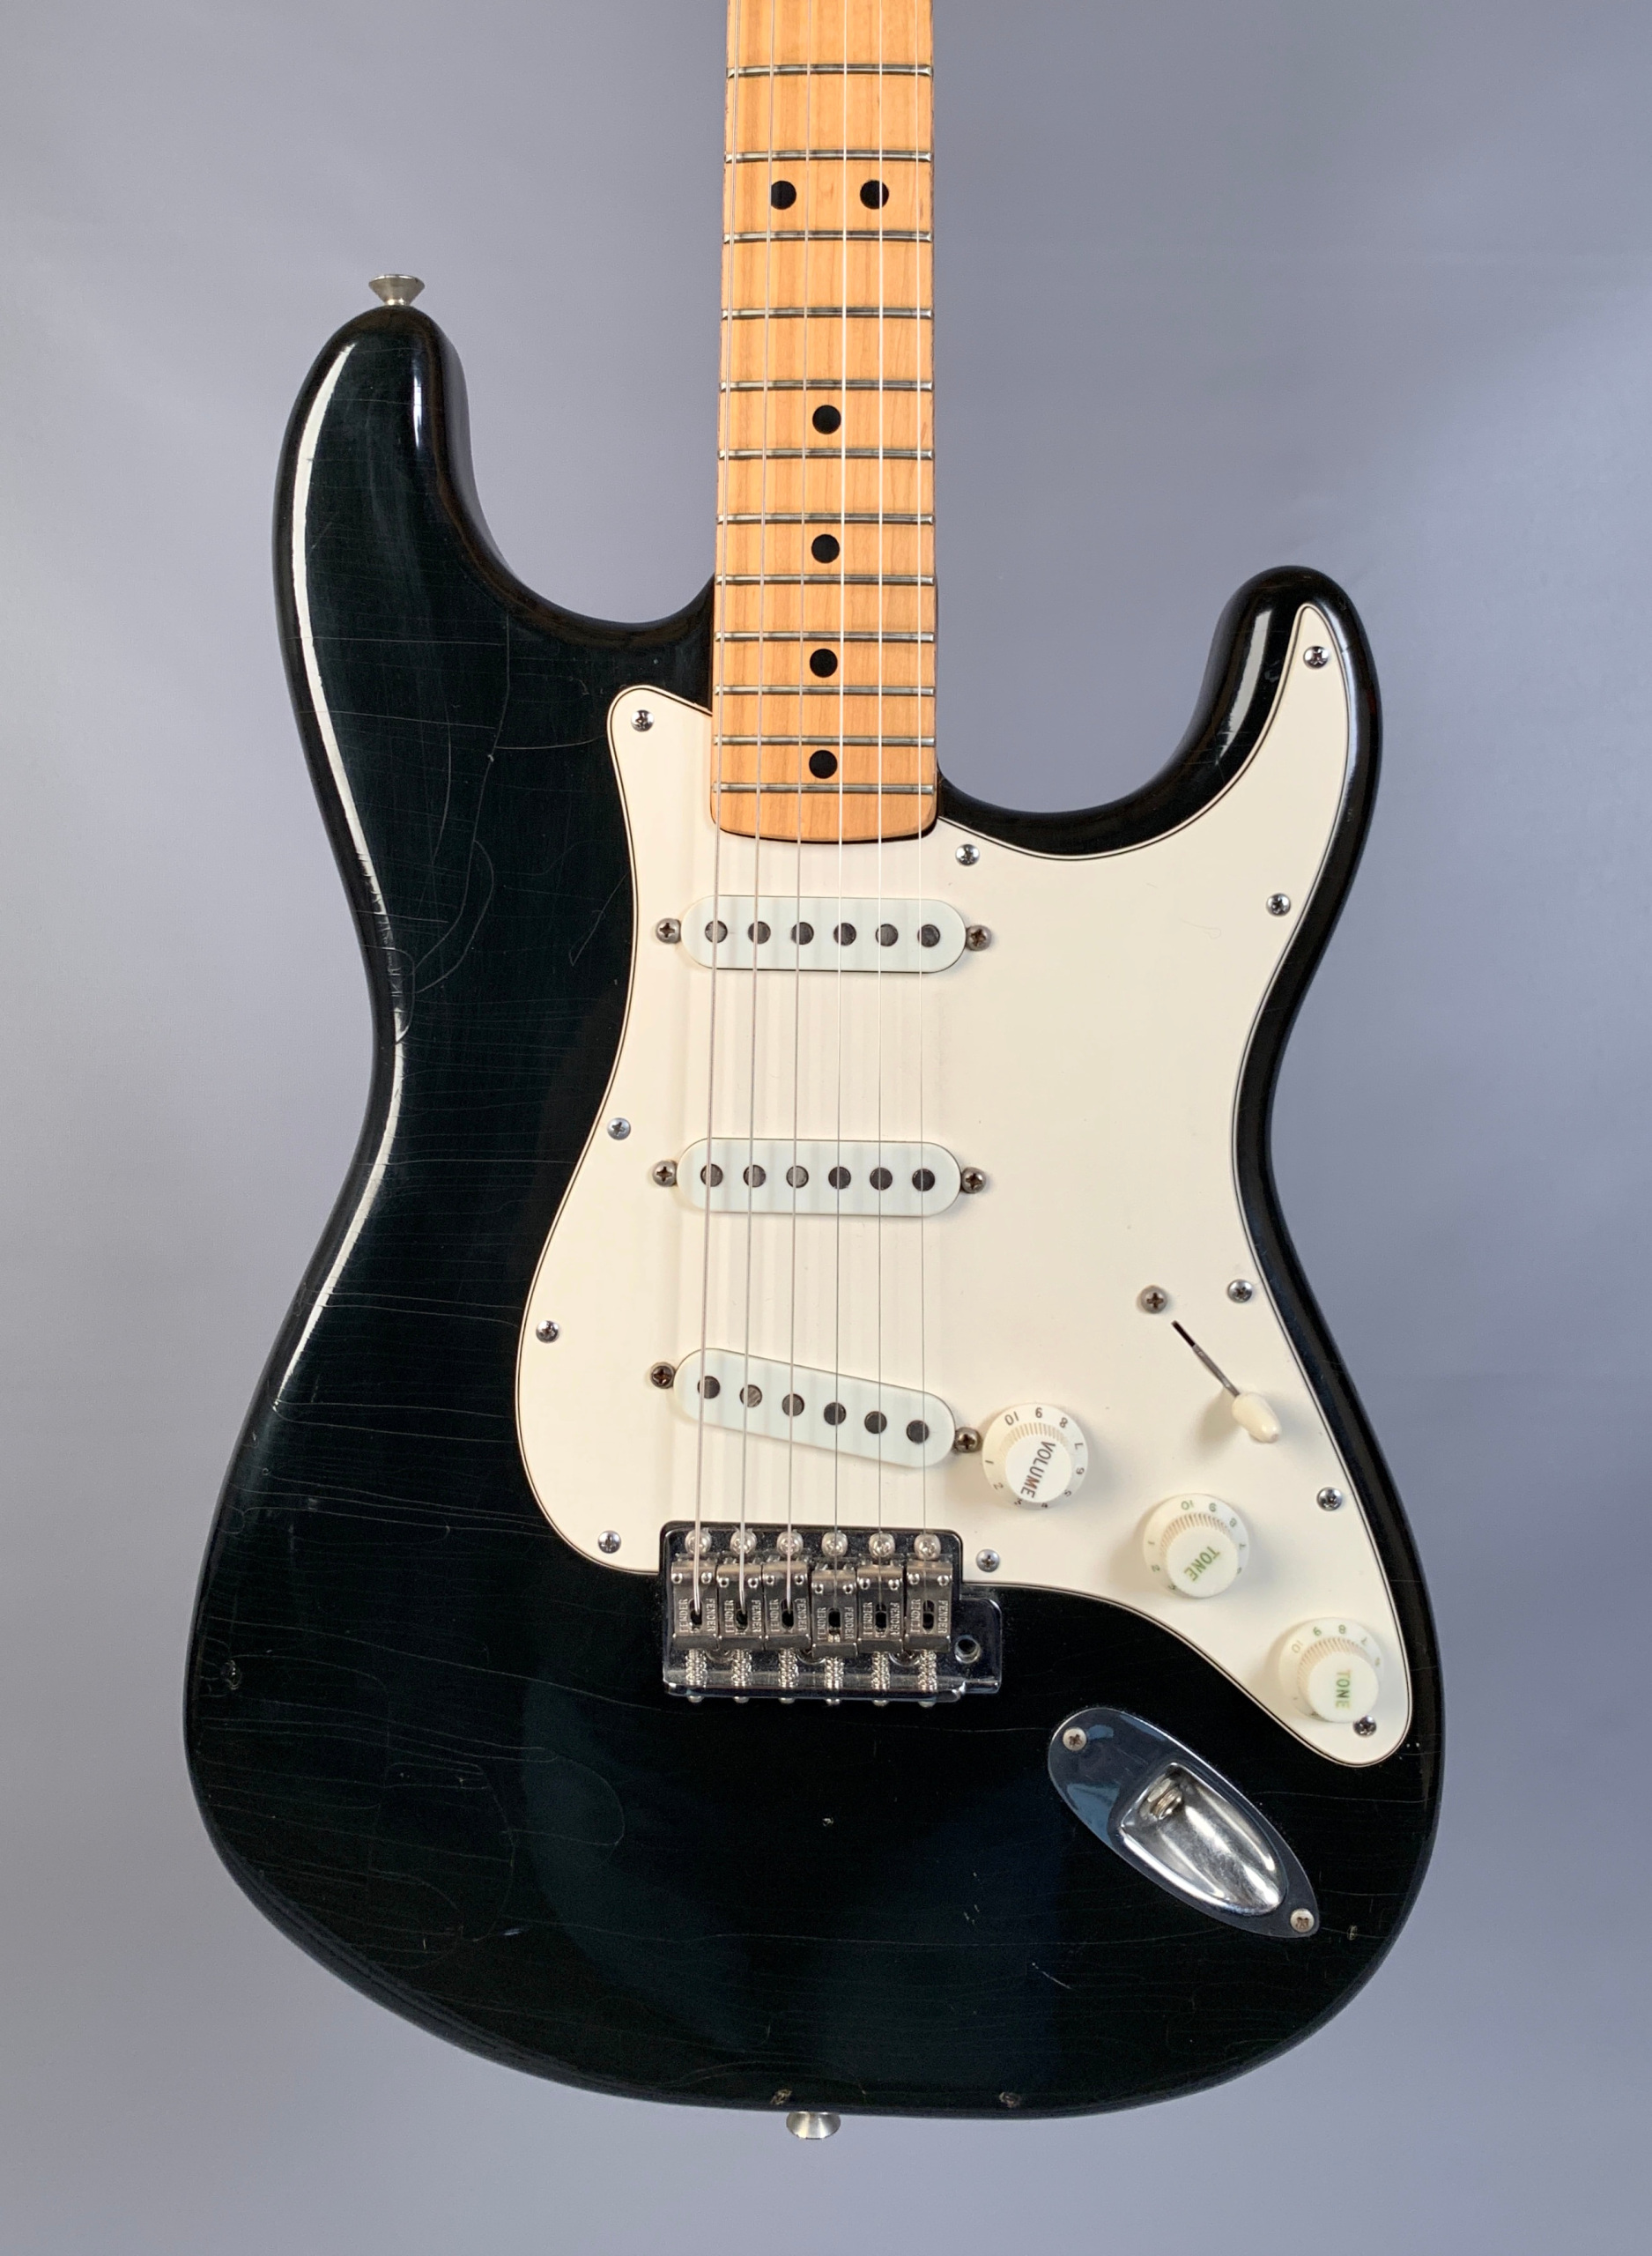 Comprensión servidor Especificidad 1976 Fender Stratocaster Black w/ Maple Neck & Fingerboard vintage strat  pre-cbs